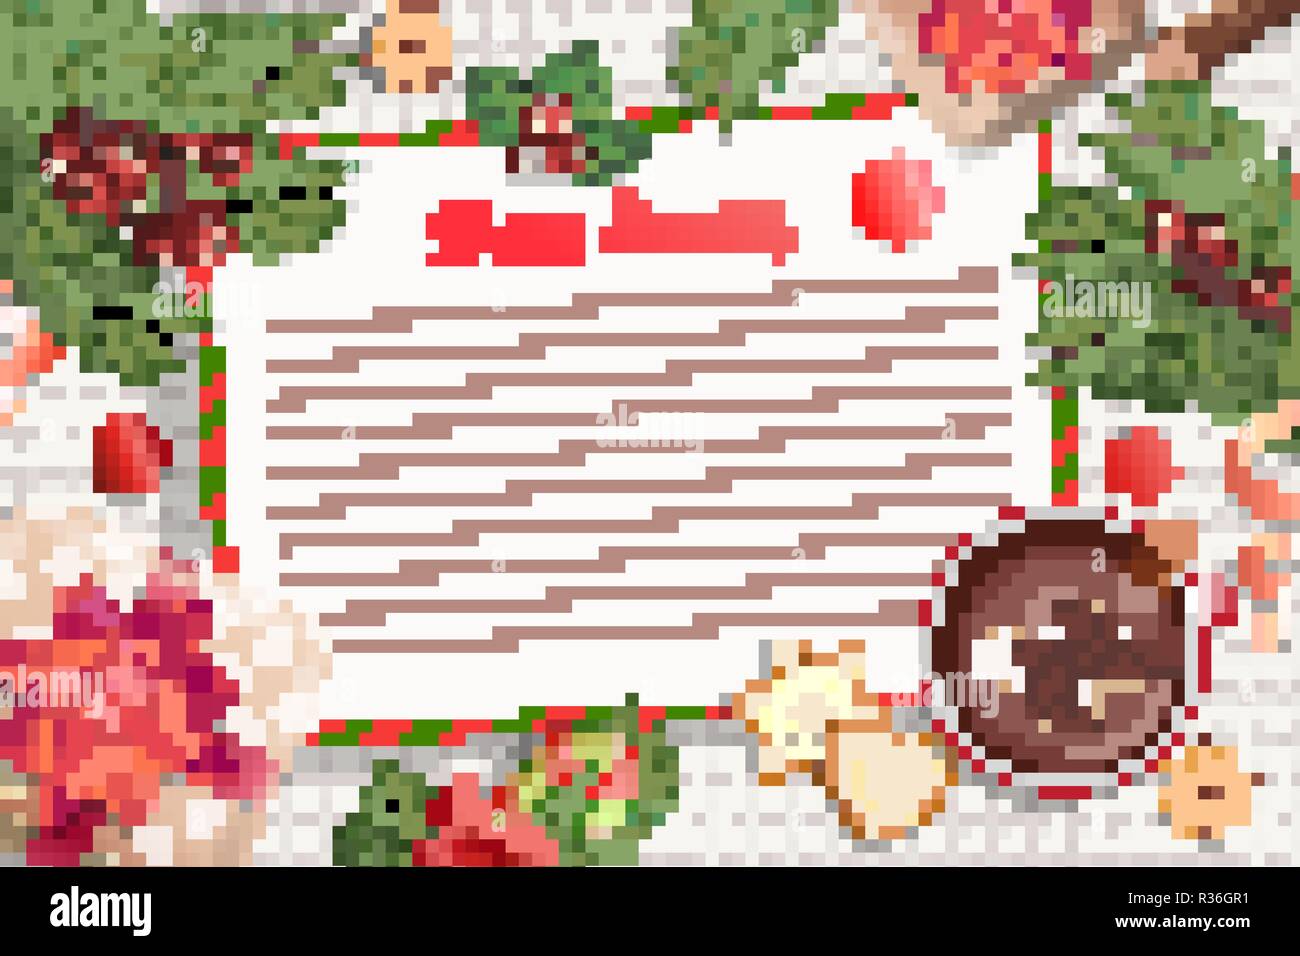 Modèle de lettre au Père Noël de Noël. avec des décorations traditionnelles-boîte-cadeau avec un arc,candy cane,le cacao avec des guimauves,d'épices et de la direction générale.La liste de souhaits pour les enfants pour les vacances.Vector. Illustration de Vecteur